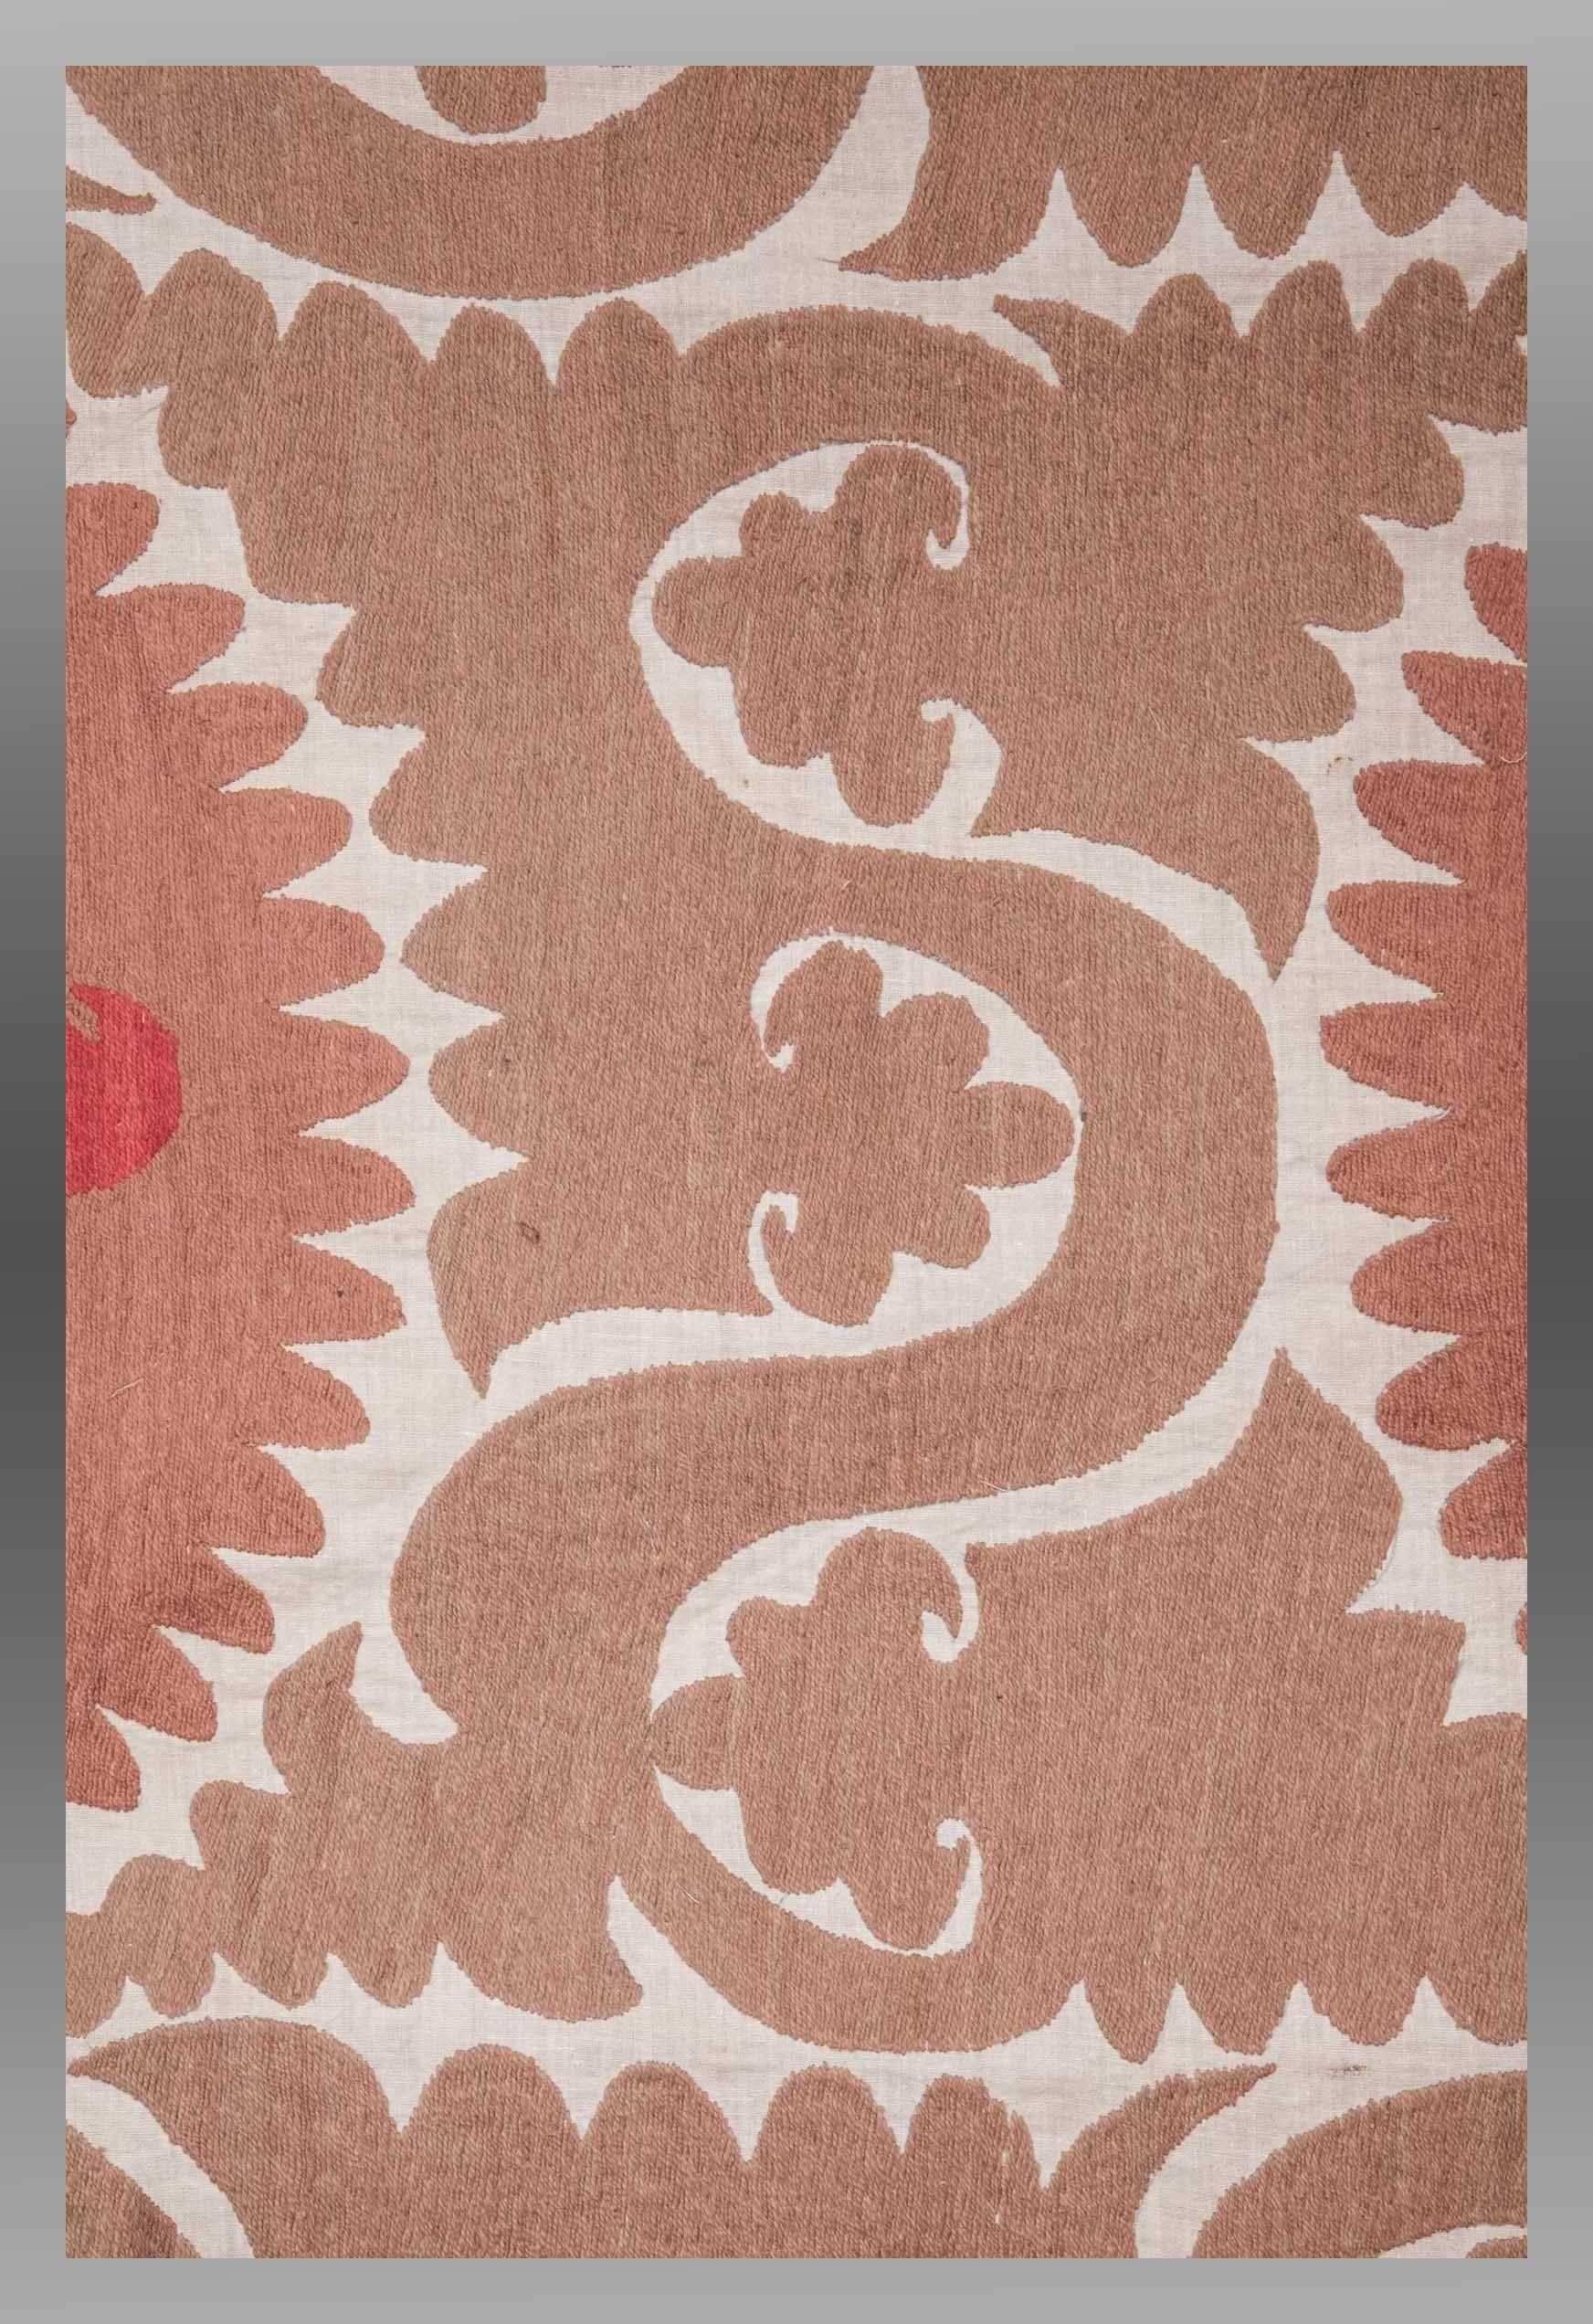 Vintage Uzbek Embroidery or 